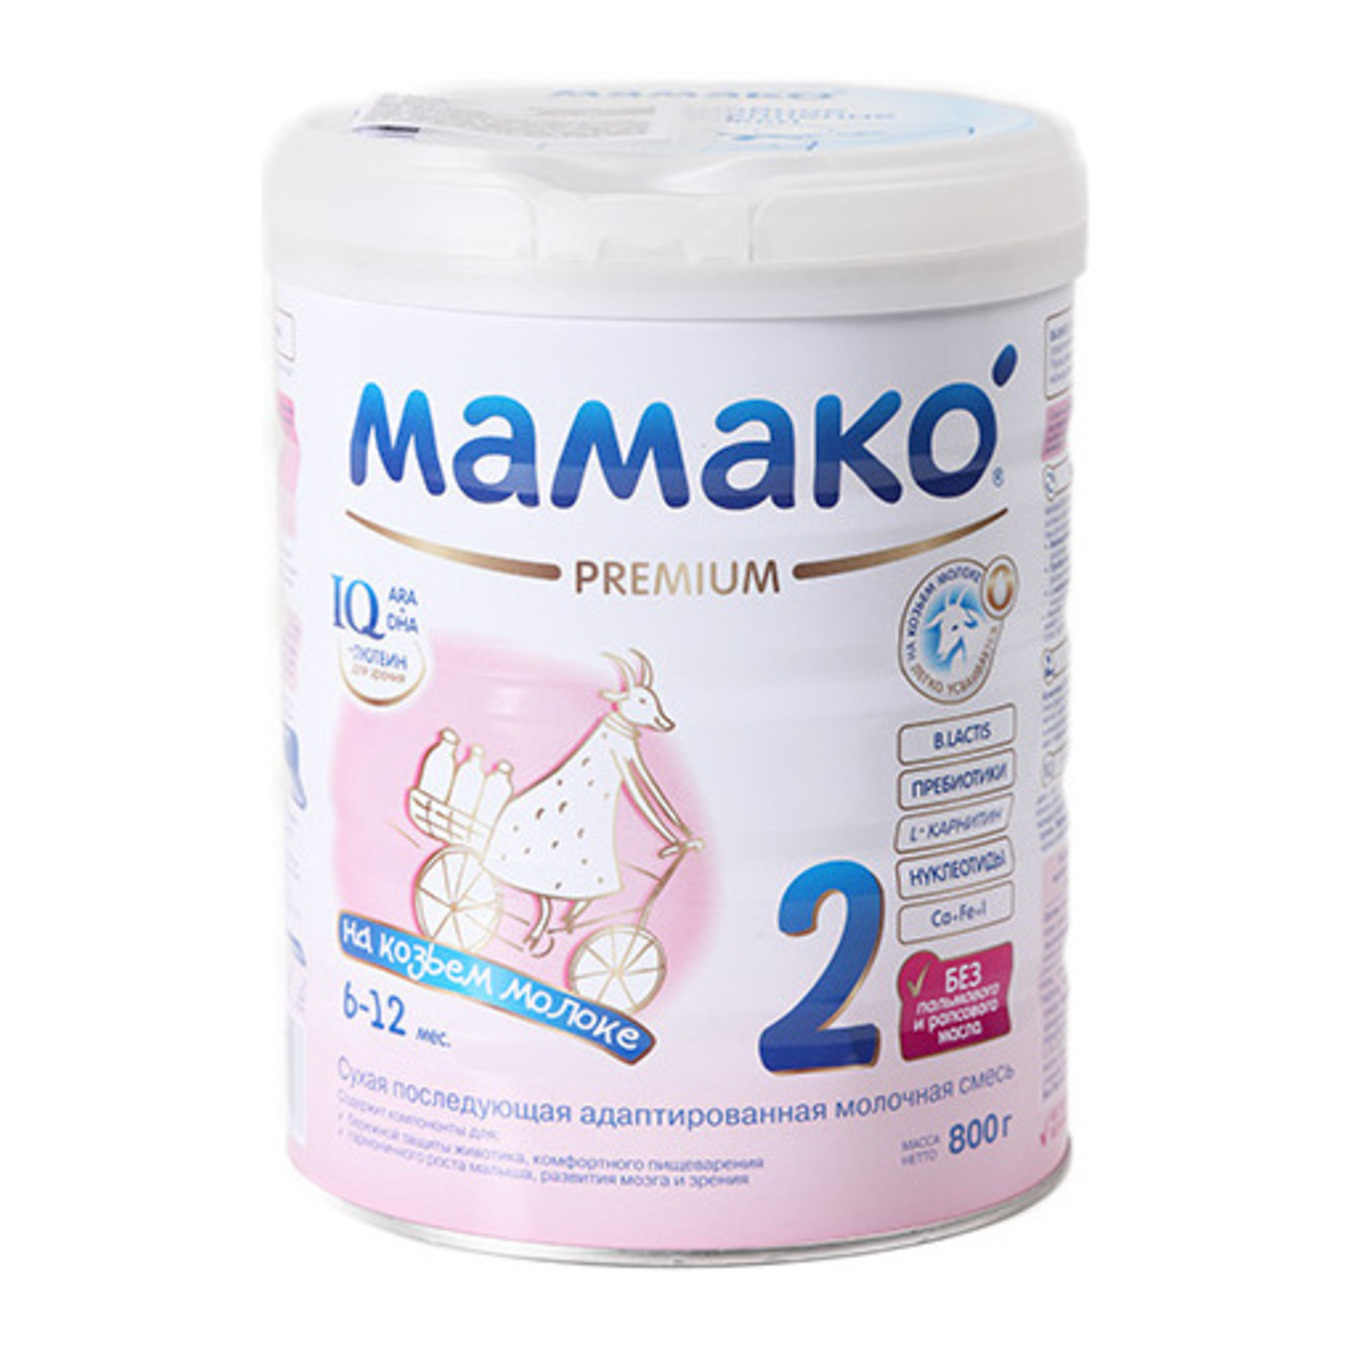 Суміш Мамако 2 Преміум суха на основі козиного молока для дітей вiд 6 до 12 місяців 800г